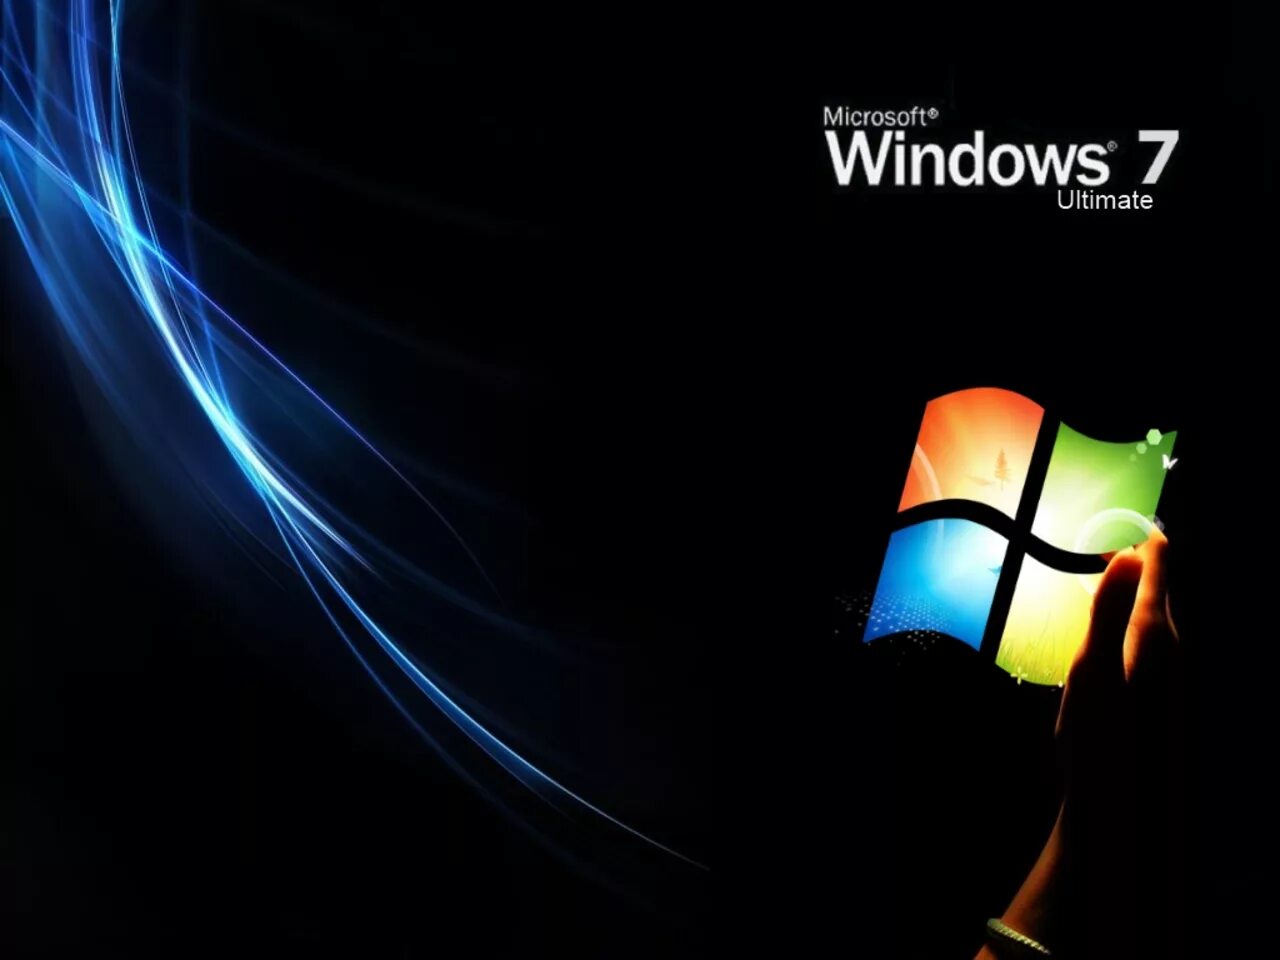 Виндовс 7. Обои Windows 7. Виндовс 7 ультиматум. Windows 7 максимальная Ultimate. Качество windows 7